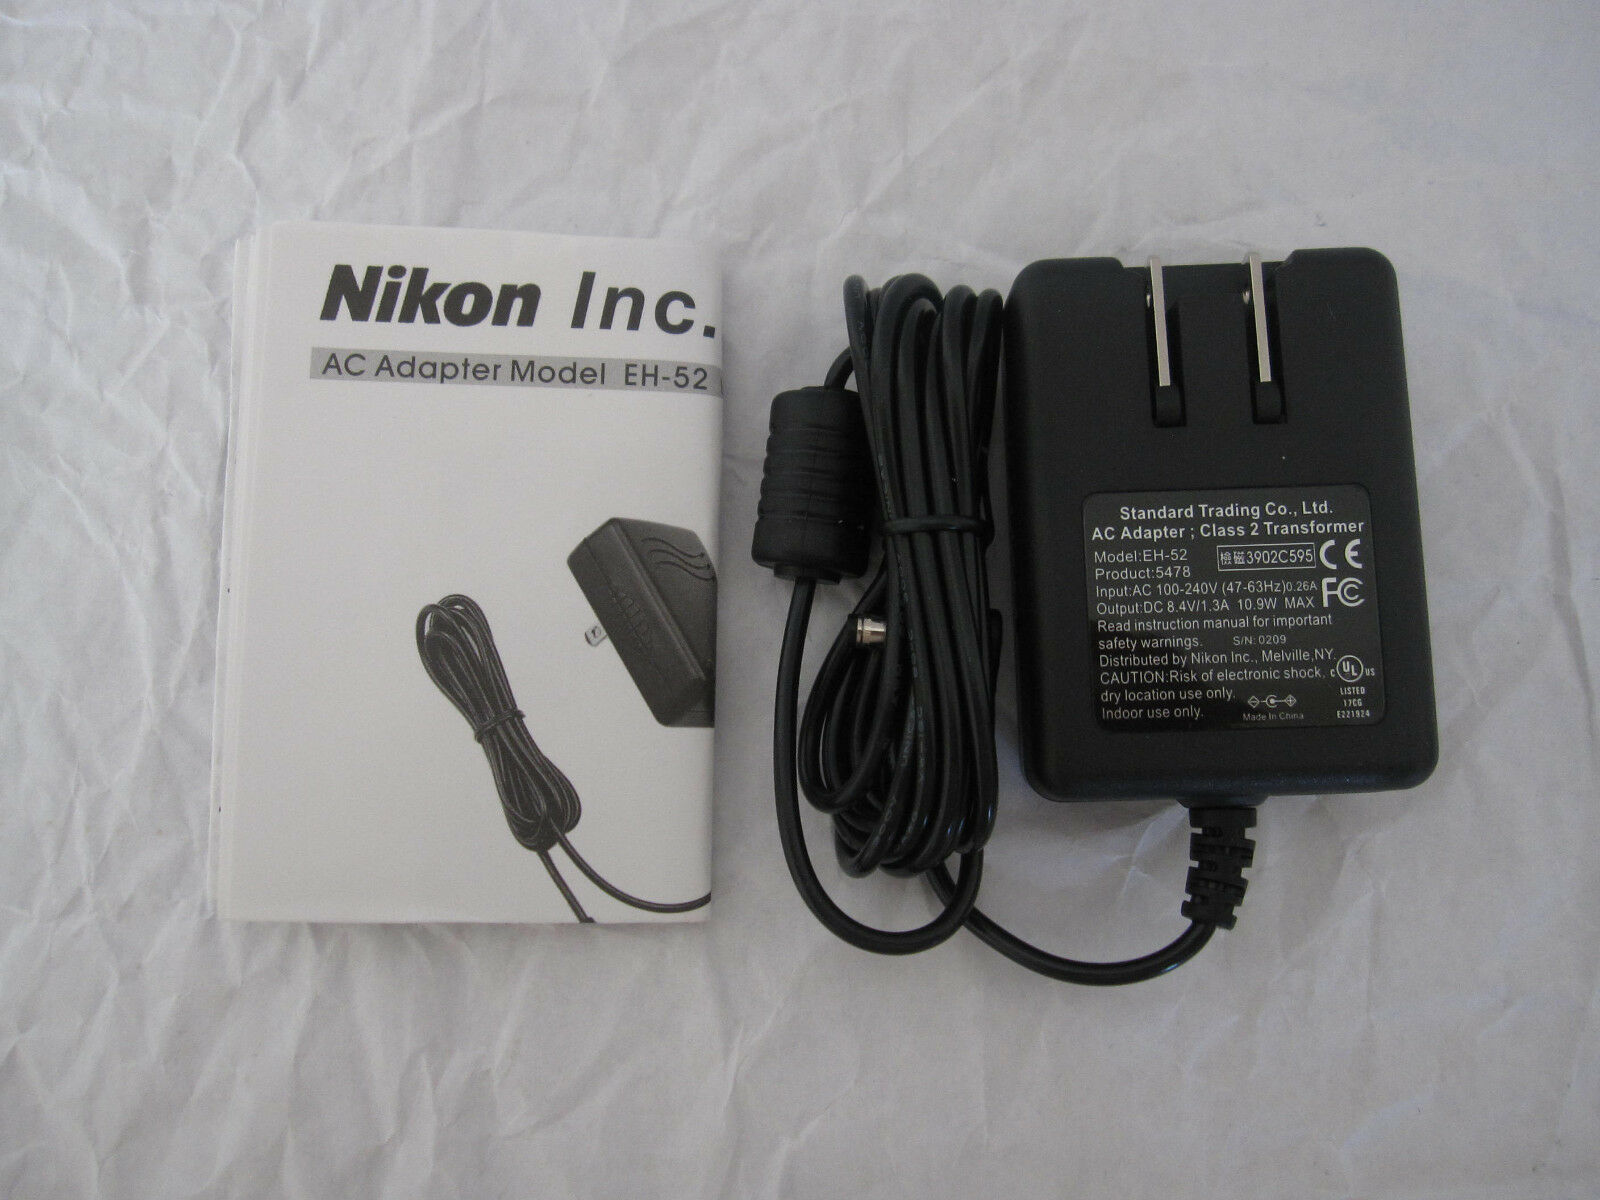 *Brand NEW*Nikon EH-52 Class 2 Transformer 8.4V 1.3A Ac Adapter - Click Image to Close